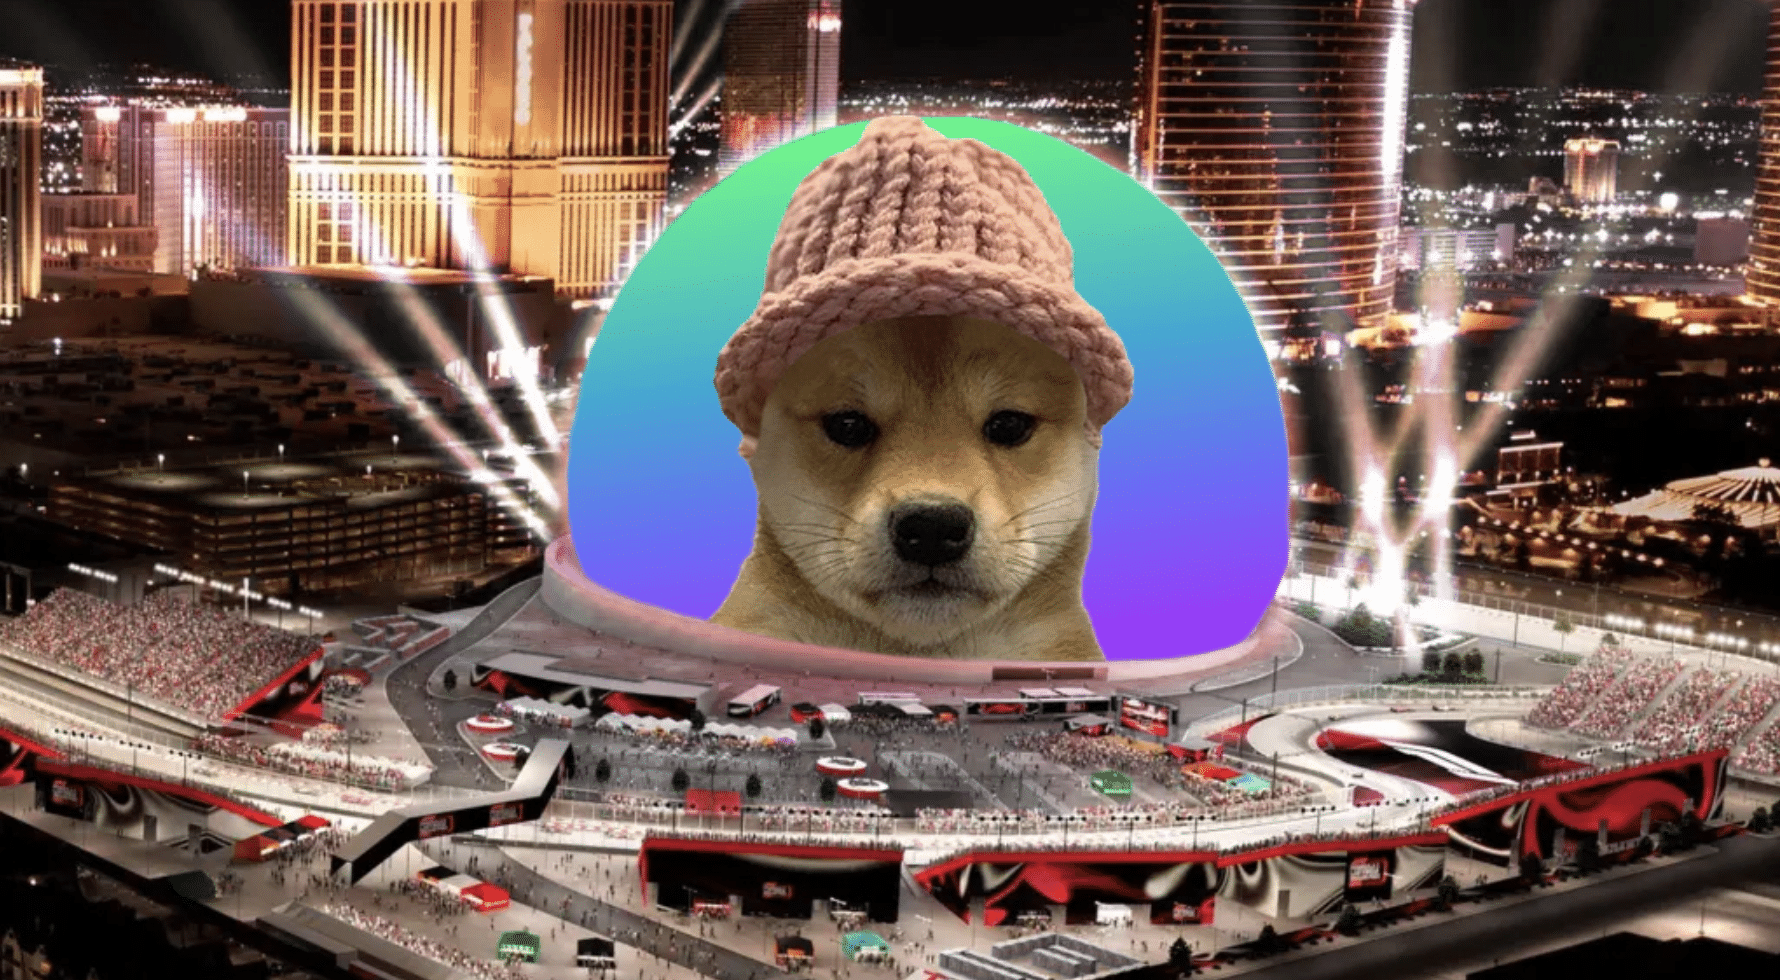 Entuziaștii Crypto Strâng aproape 690,000 USD pentru a pune Dogwifhat Meme pe Las Vegas Sphere - Unchained